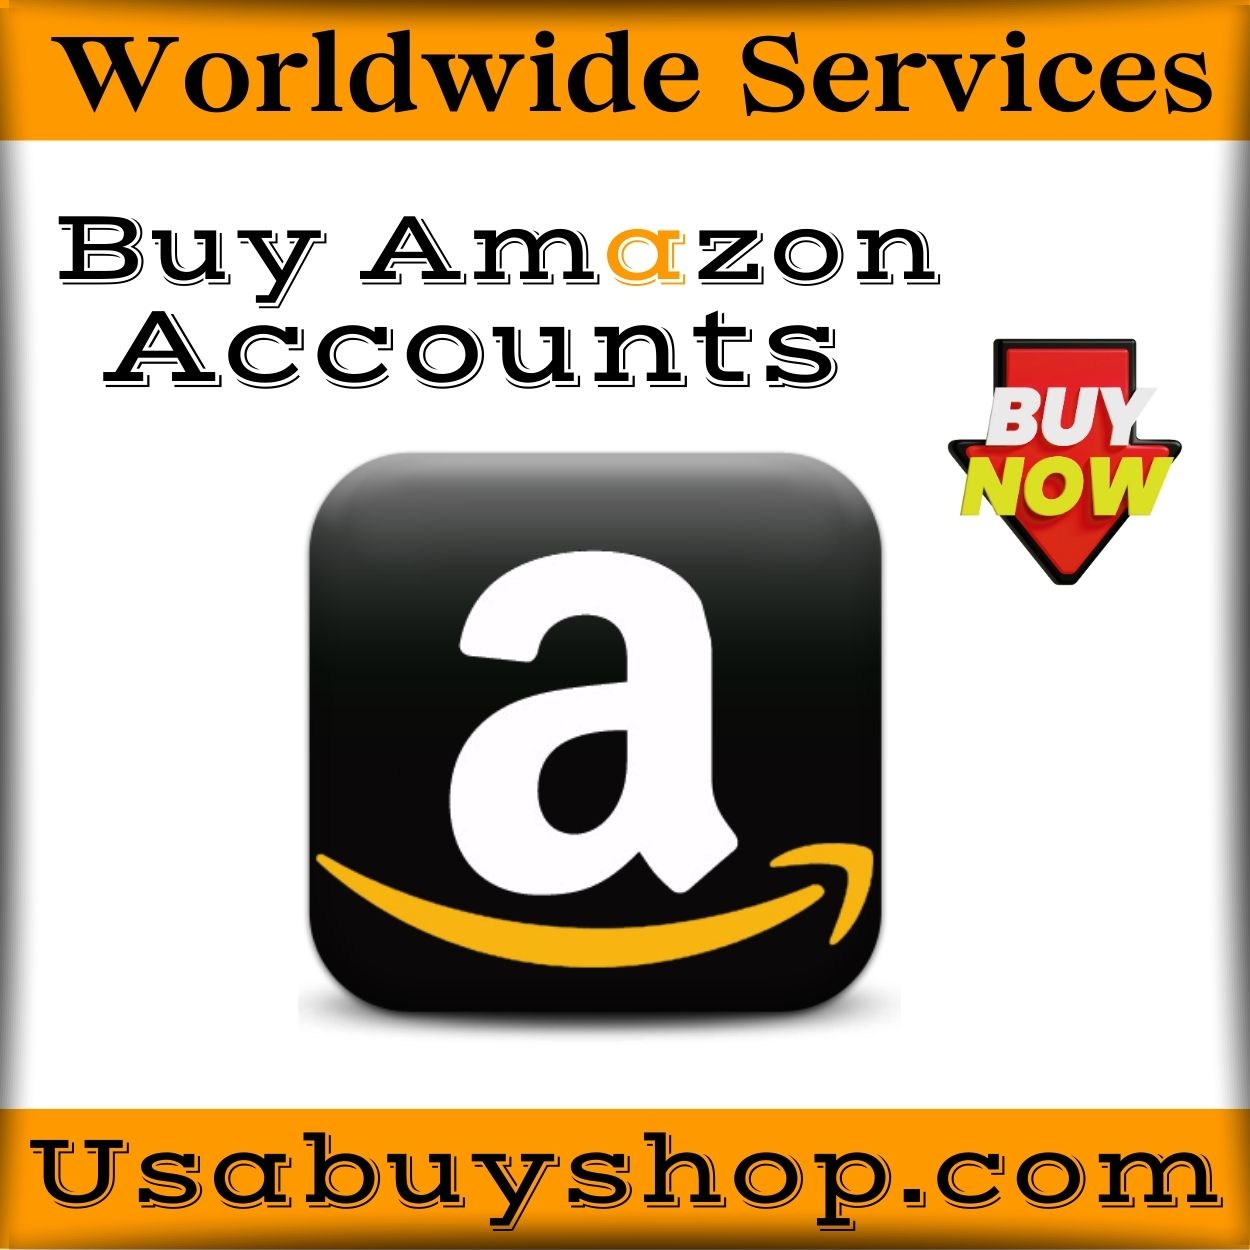 Buy Amazon Accounts - 100% PVA Seller & Buyer Accounts